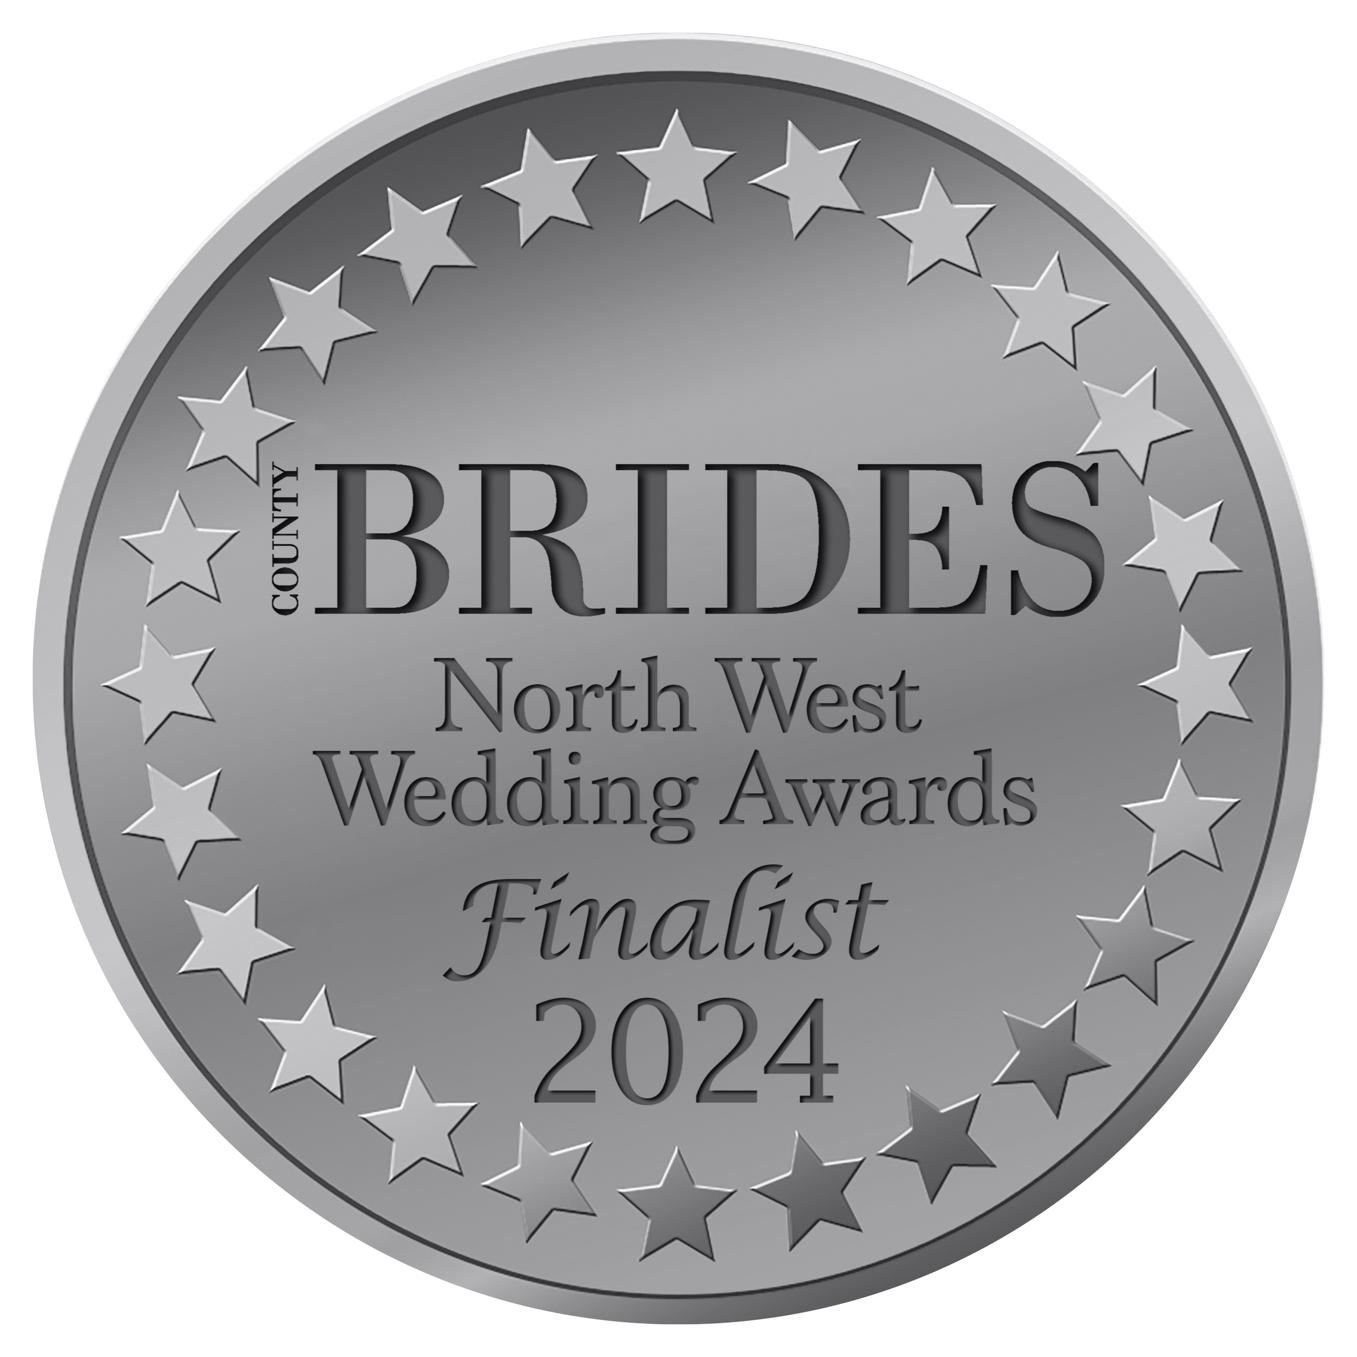 North west wedding awards Finalist